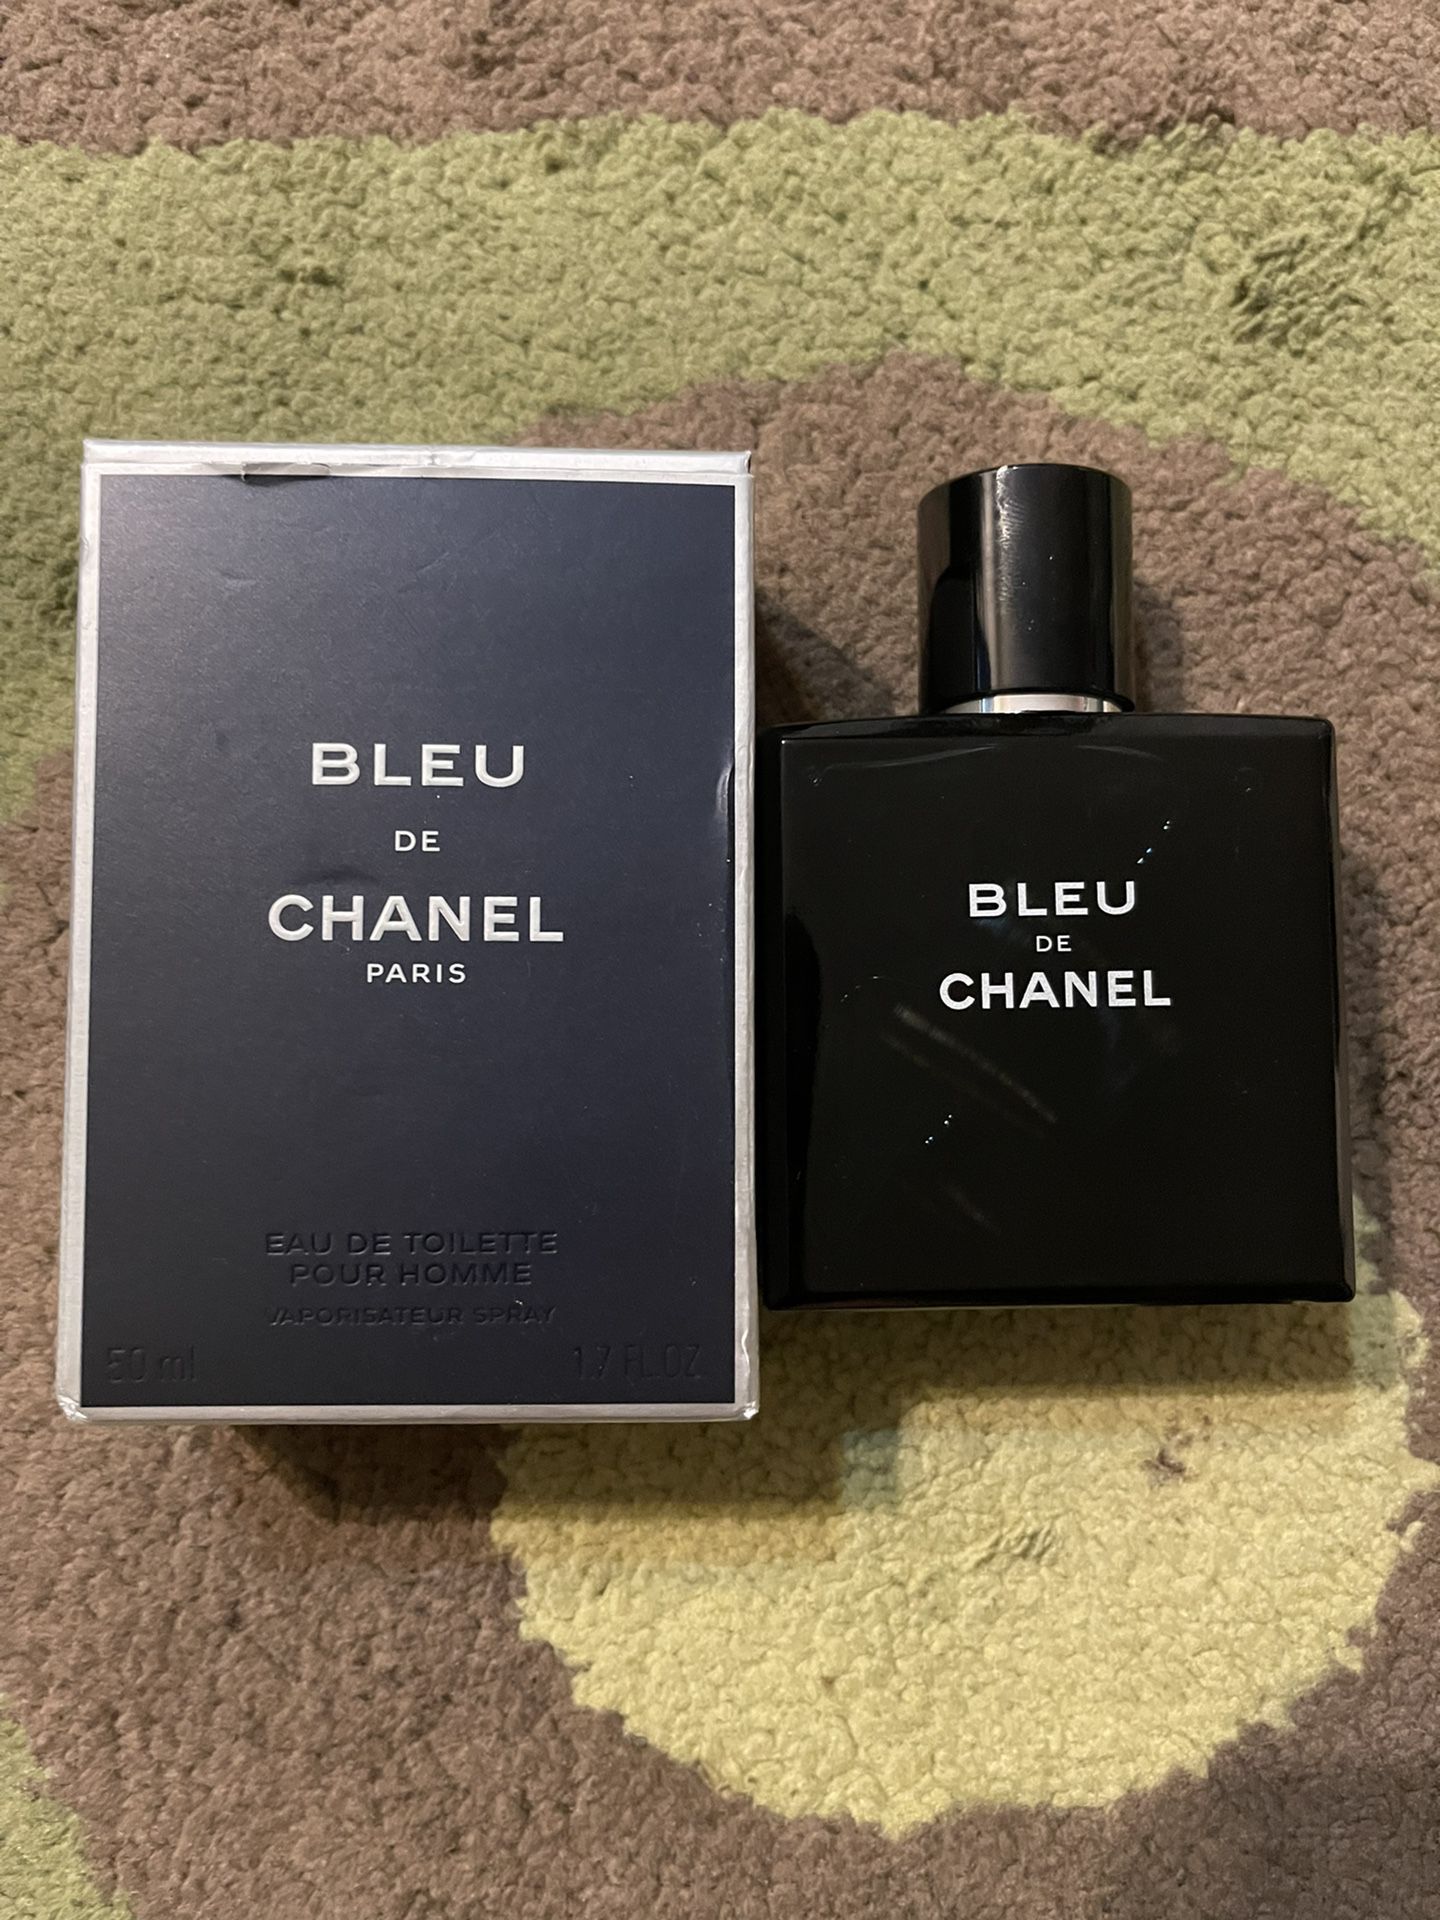 Chanel Launches Bleu de Chanel Eau de Parfum for Men – The Fashionisto